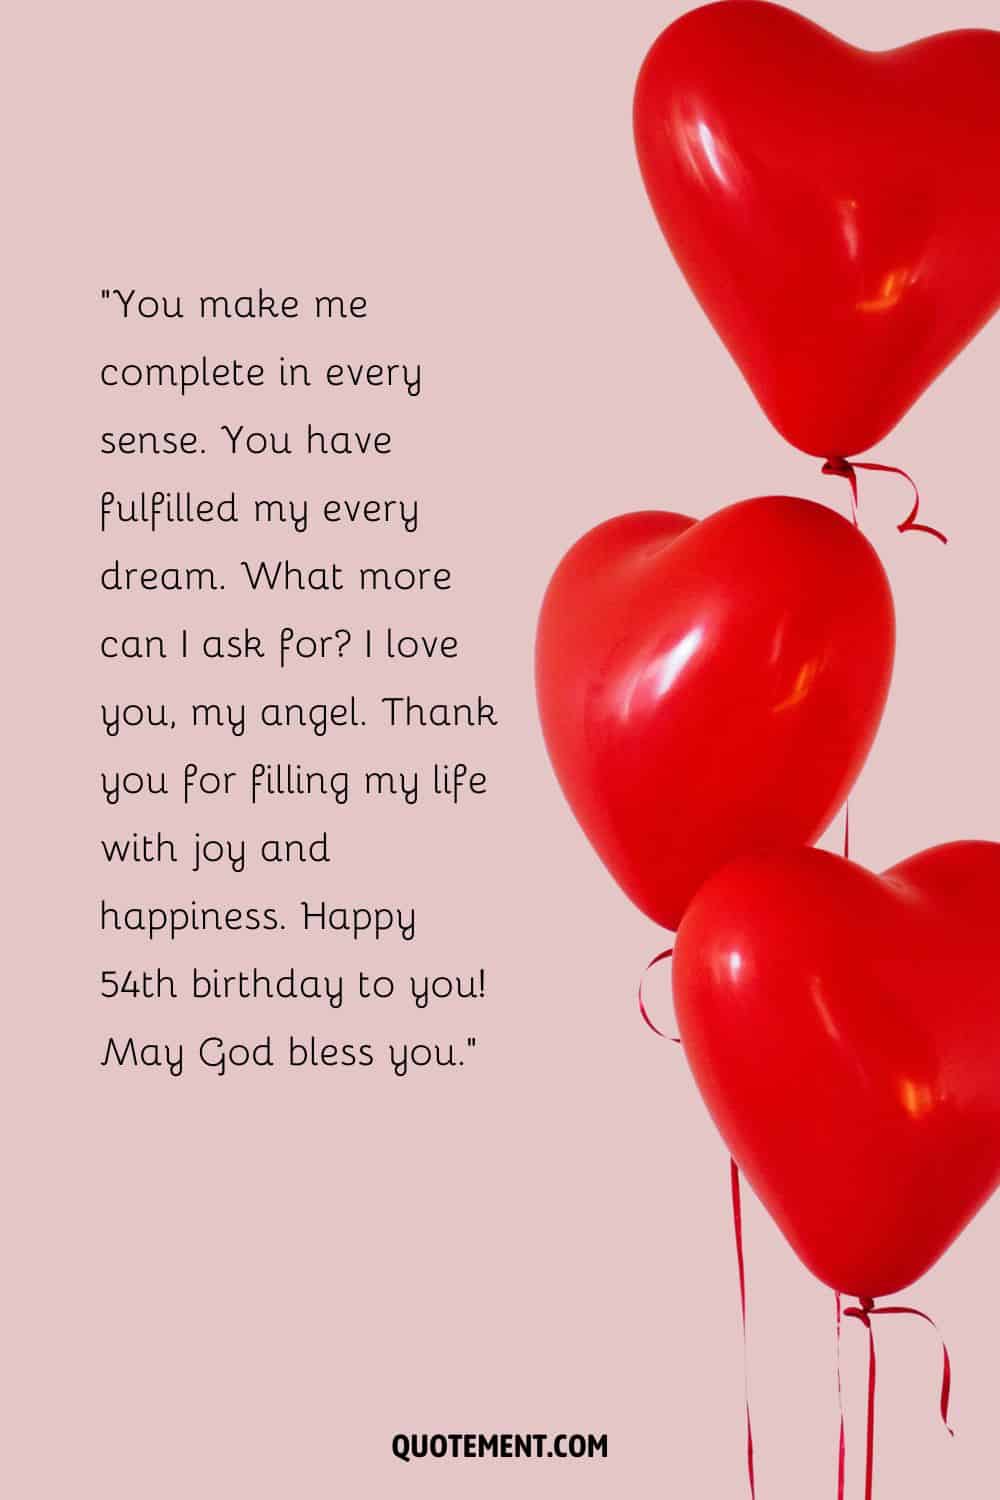 Conmovedor mensaje para el 54 cumpleaños de su mujer y globos rojos en forma de corazón al lado